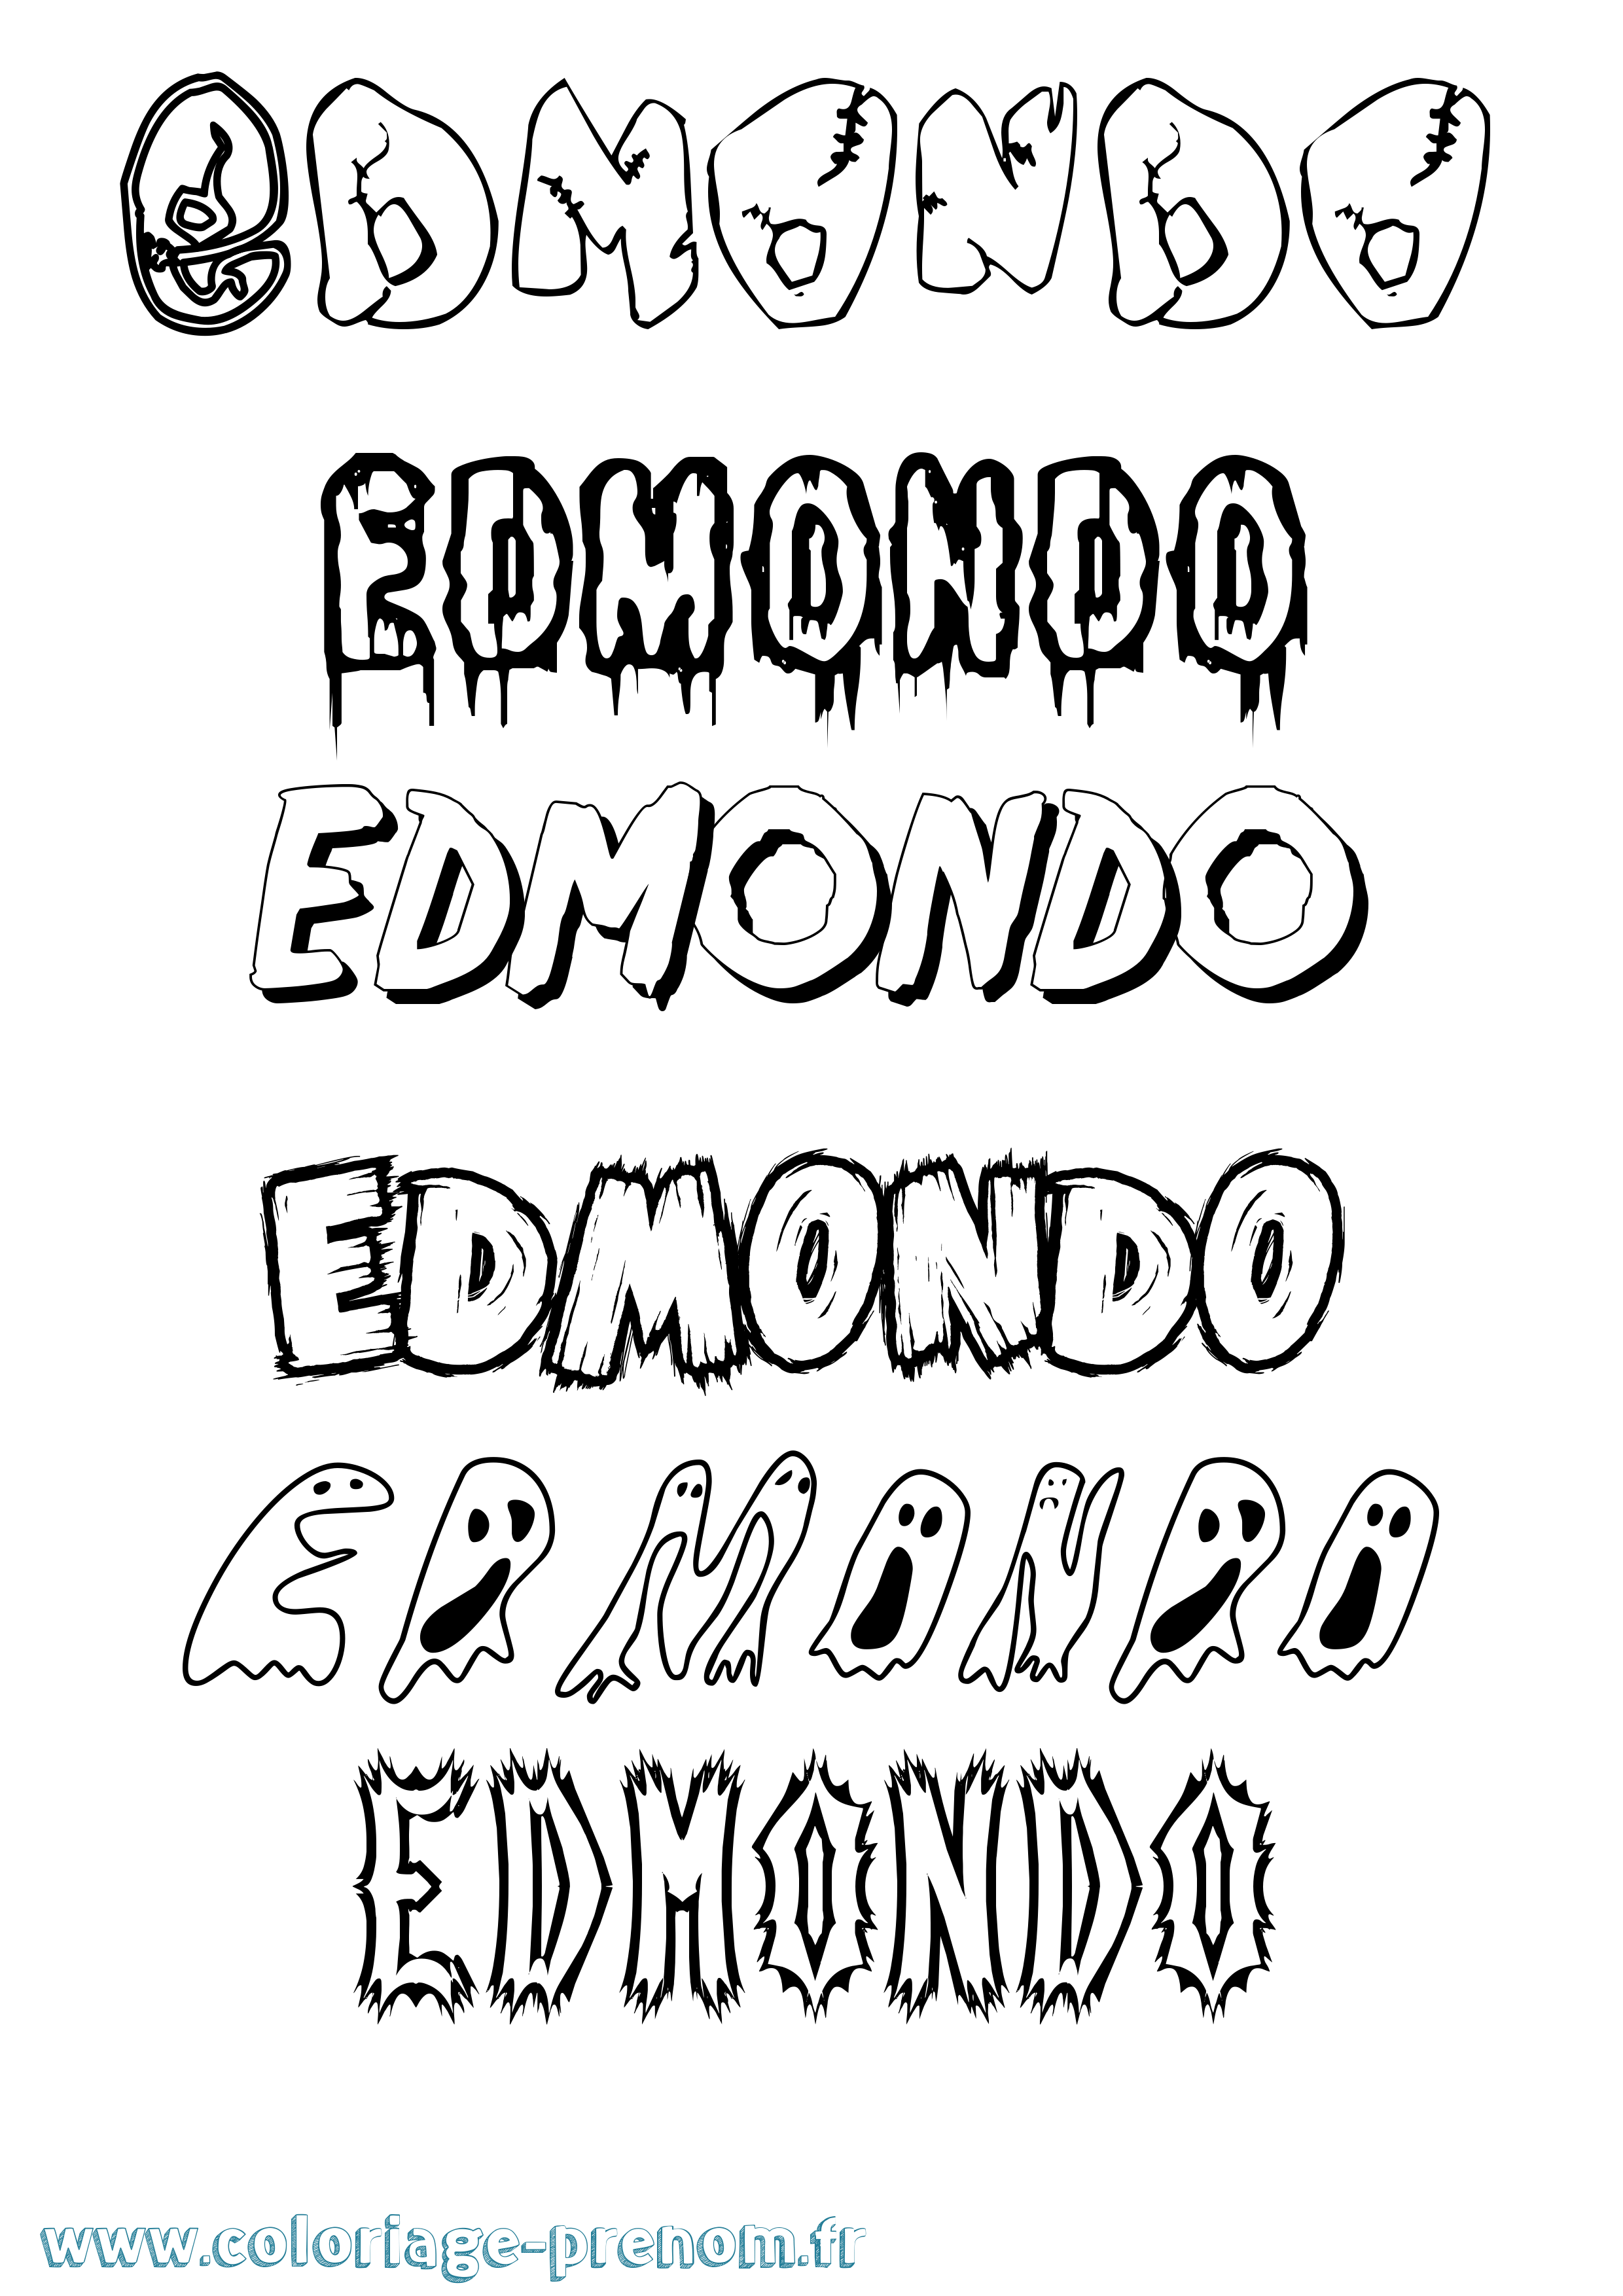 Coloriage prénom Edmondo Frisson